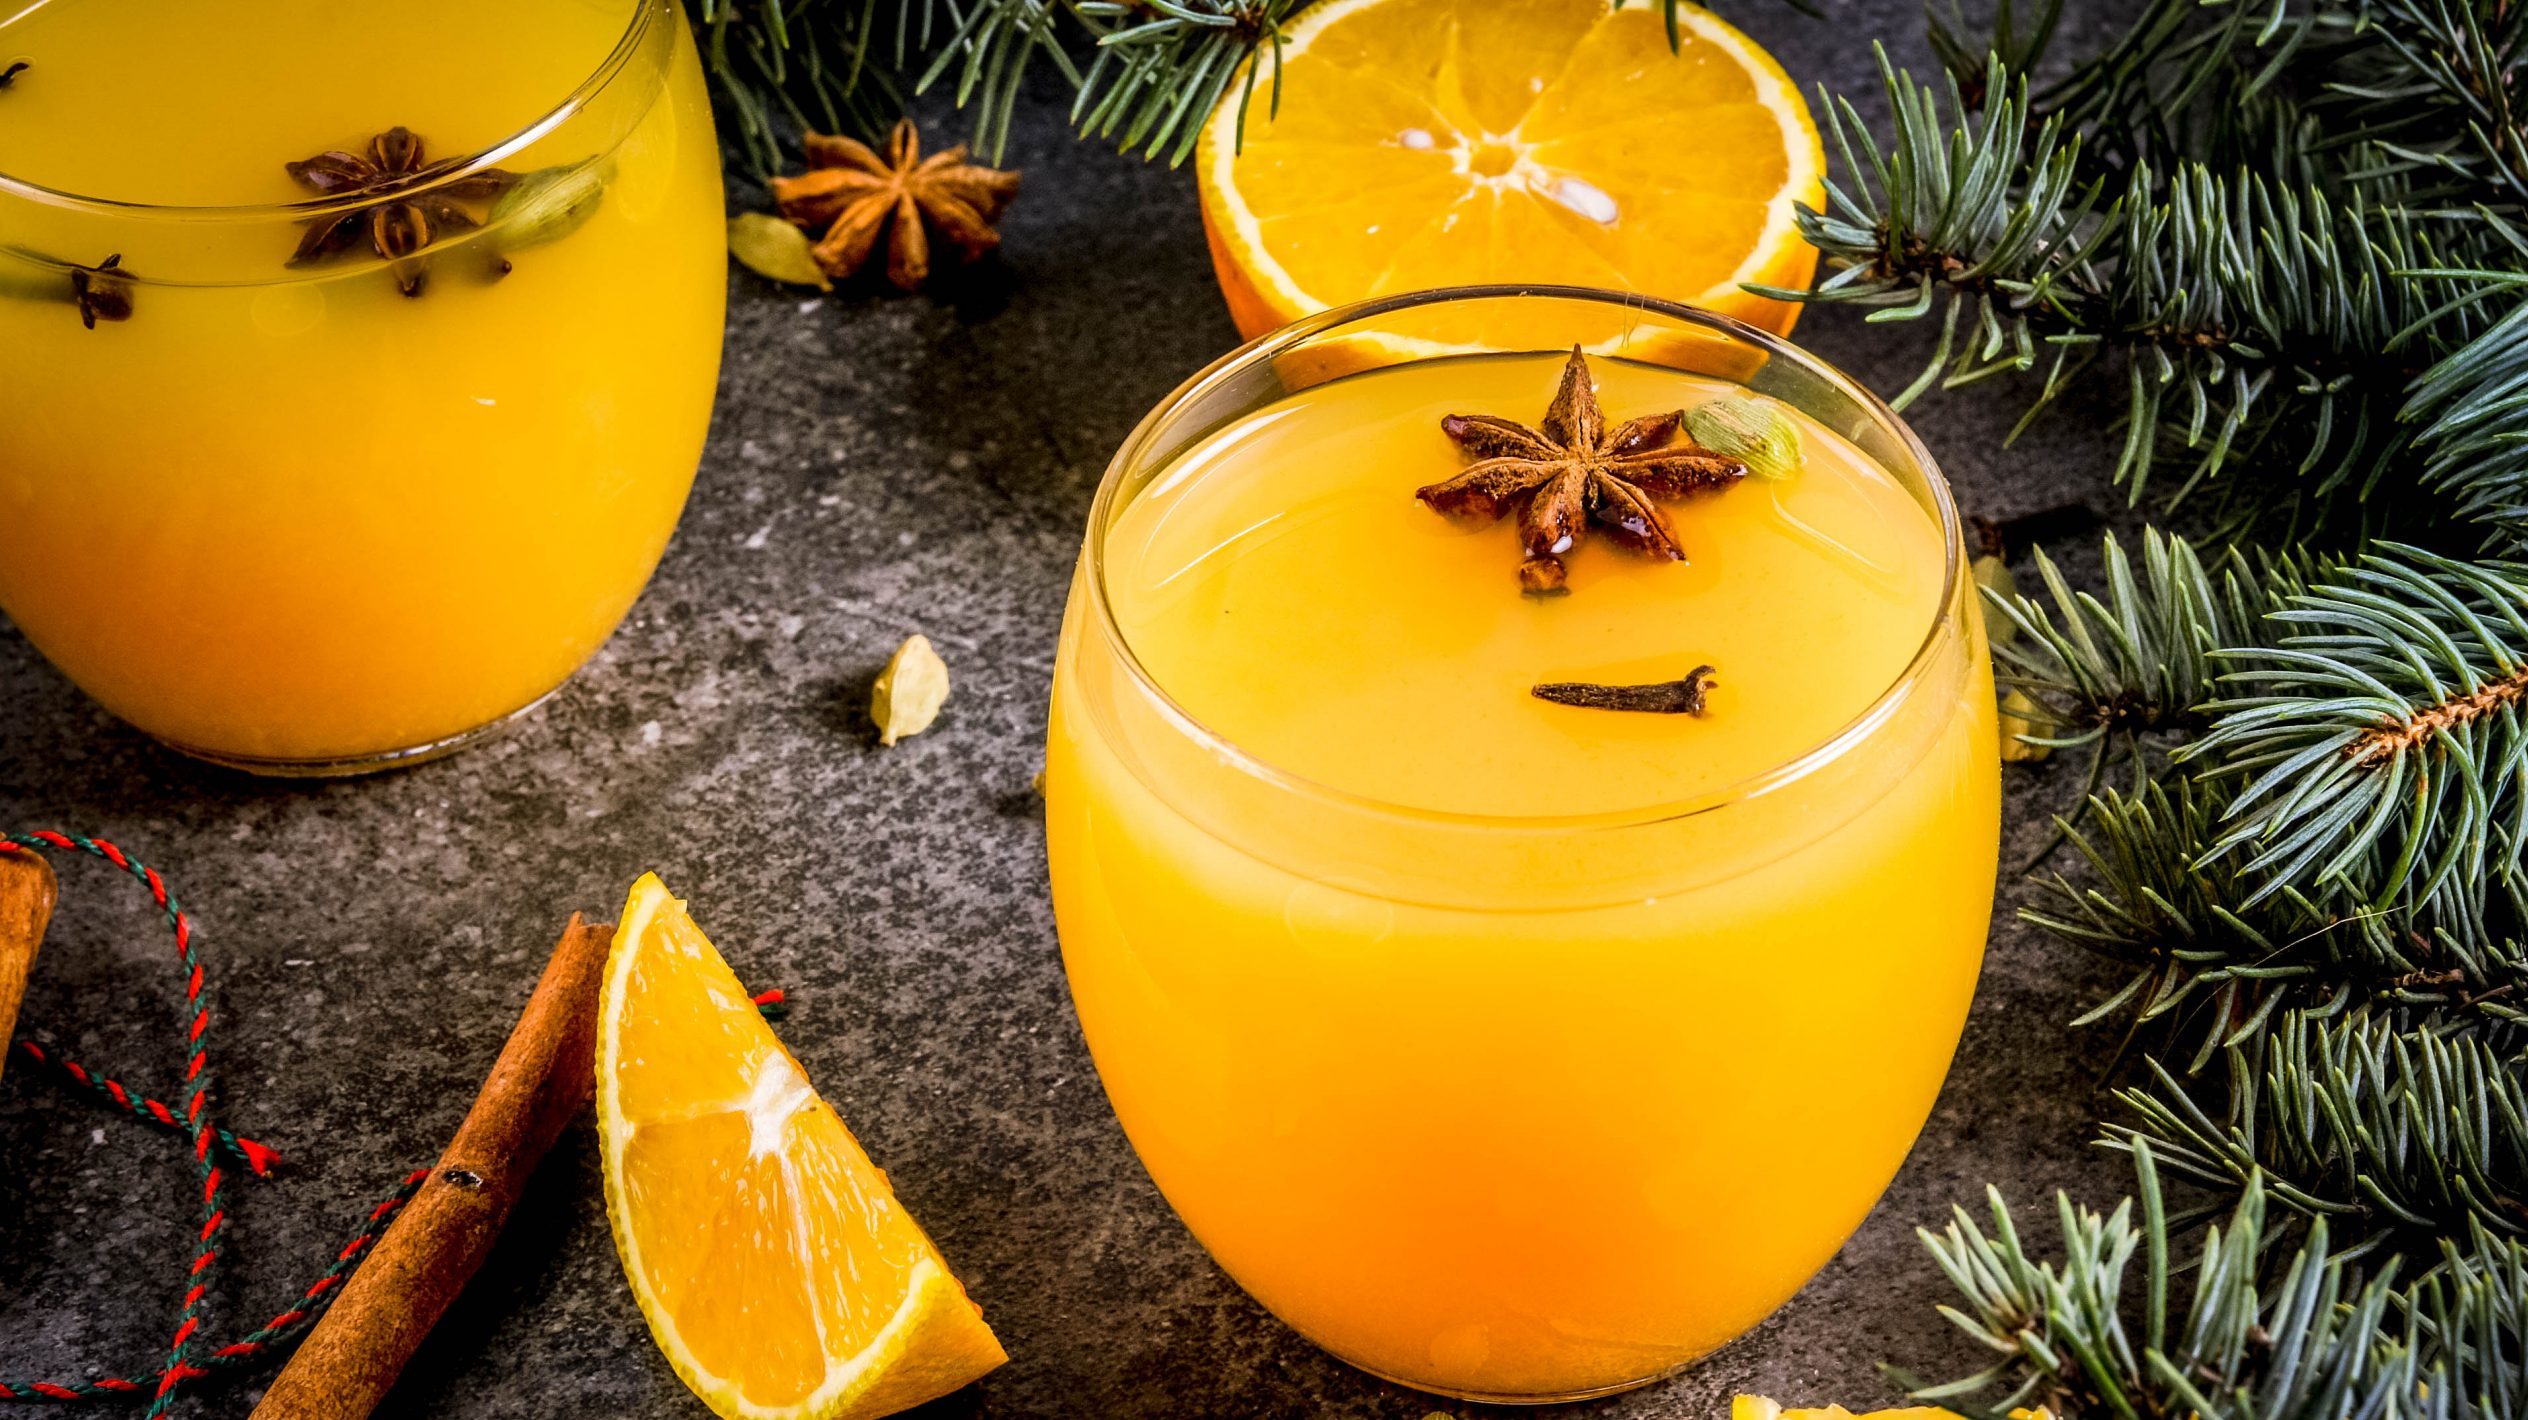 Der Weihnachts-Cocktail mit Orange und Zimt in zwei runden Gläsern angerichtet. Dazu sind im Hintergrund Teile eines Nadelbaums zu sehen.